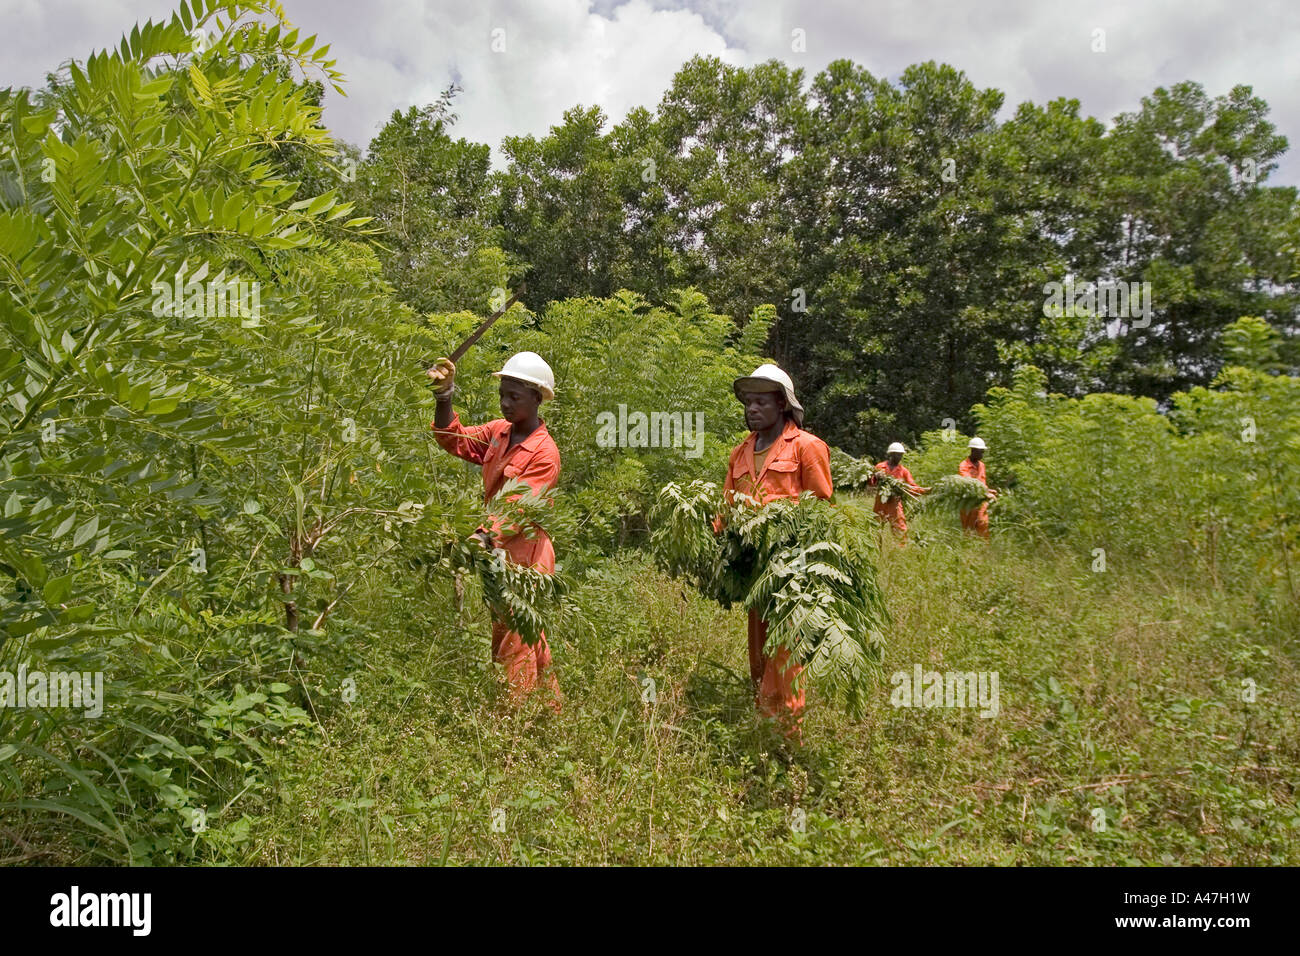 Lavoratori ambientale e assistenti di campo lavorando sul coperchio di terra in superficie riabilitati miniera d'oro pit, Ghana, Africa occidentale Foto Stock